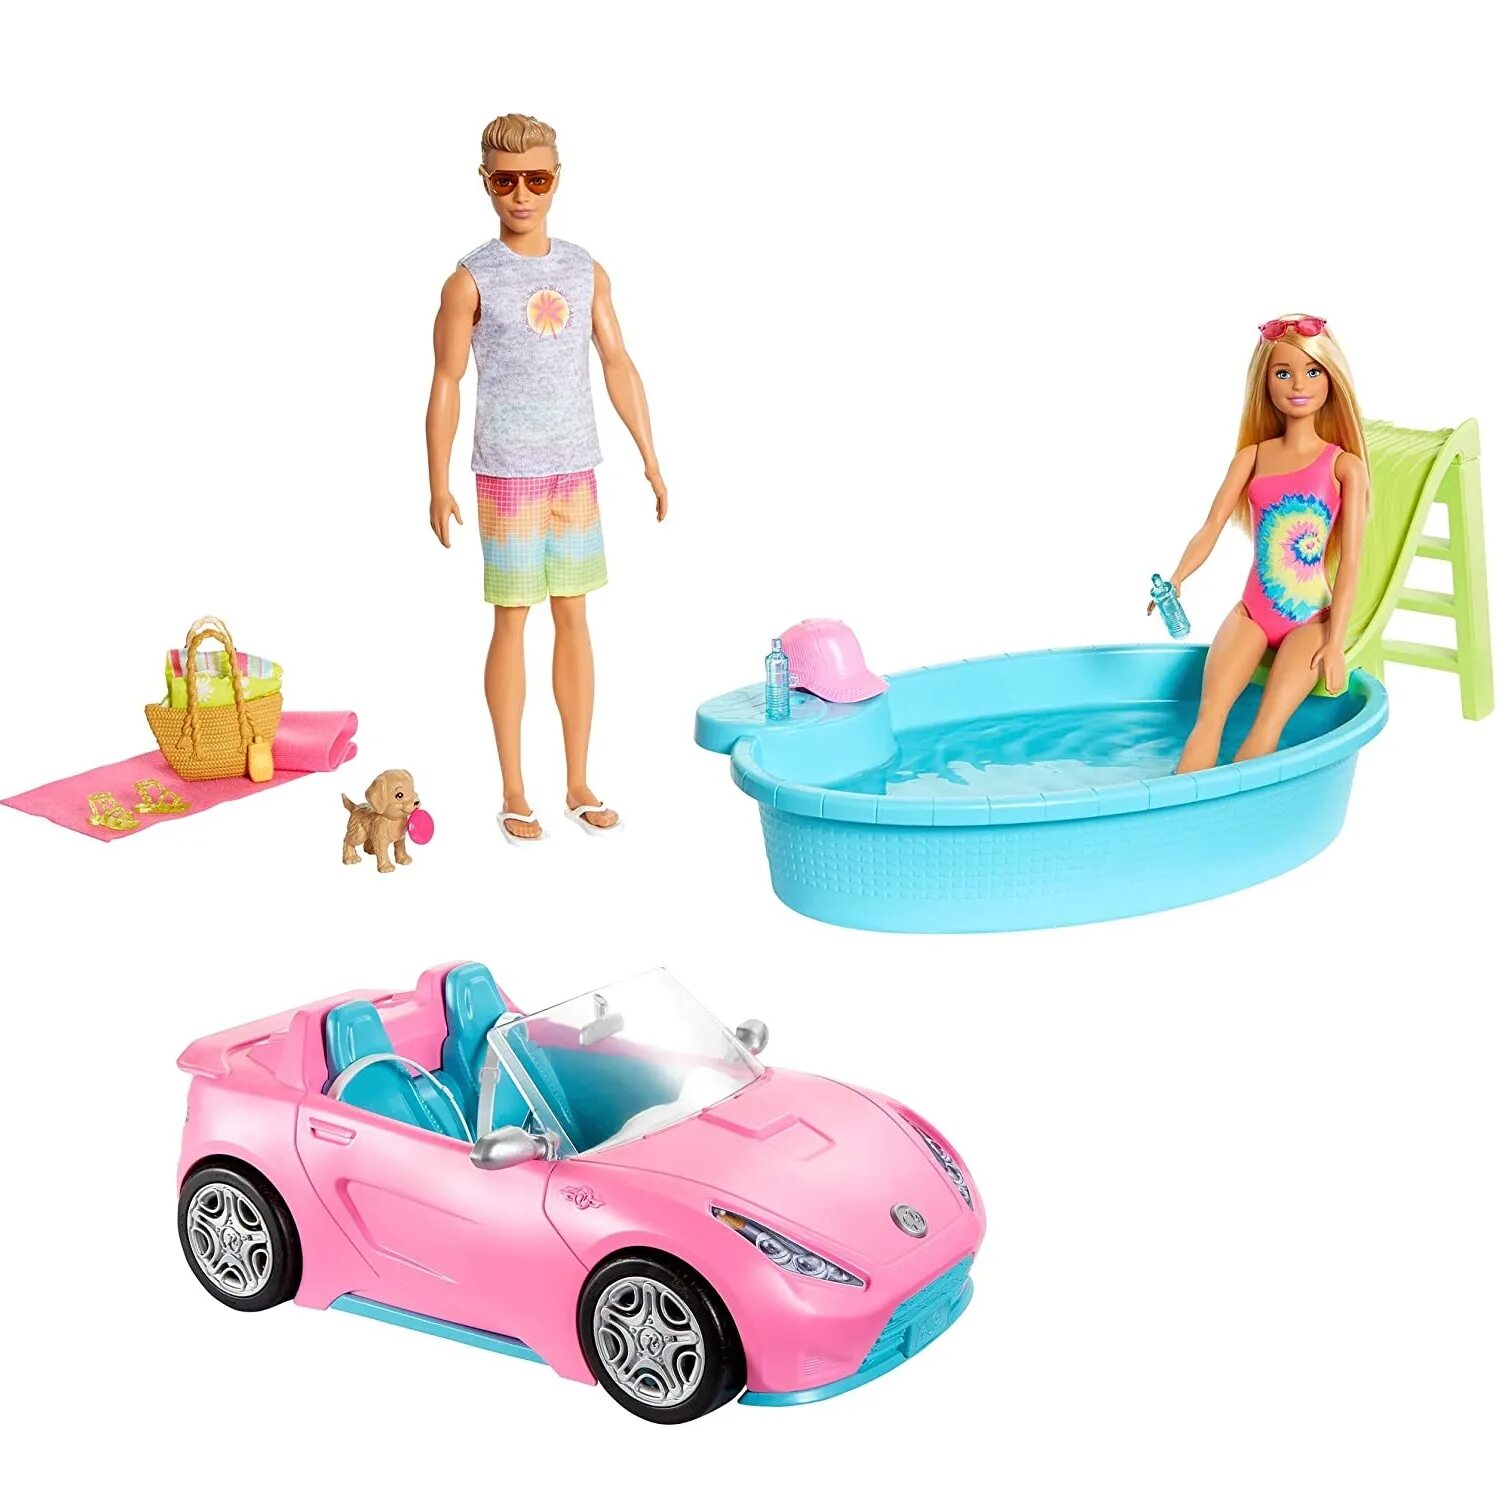 Набор игровой Barbie 2куклы +автомобиль +аксессуары gjb71. Набор Барби Кен машина бассейн. Набор Барби gjb71. Набор Барби и Кен с машиной.